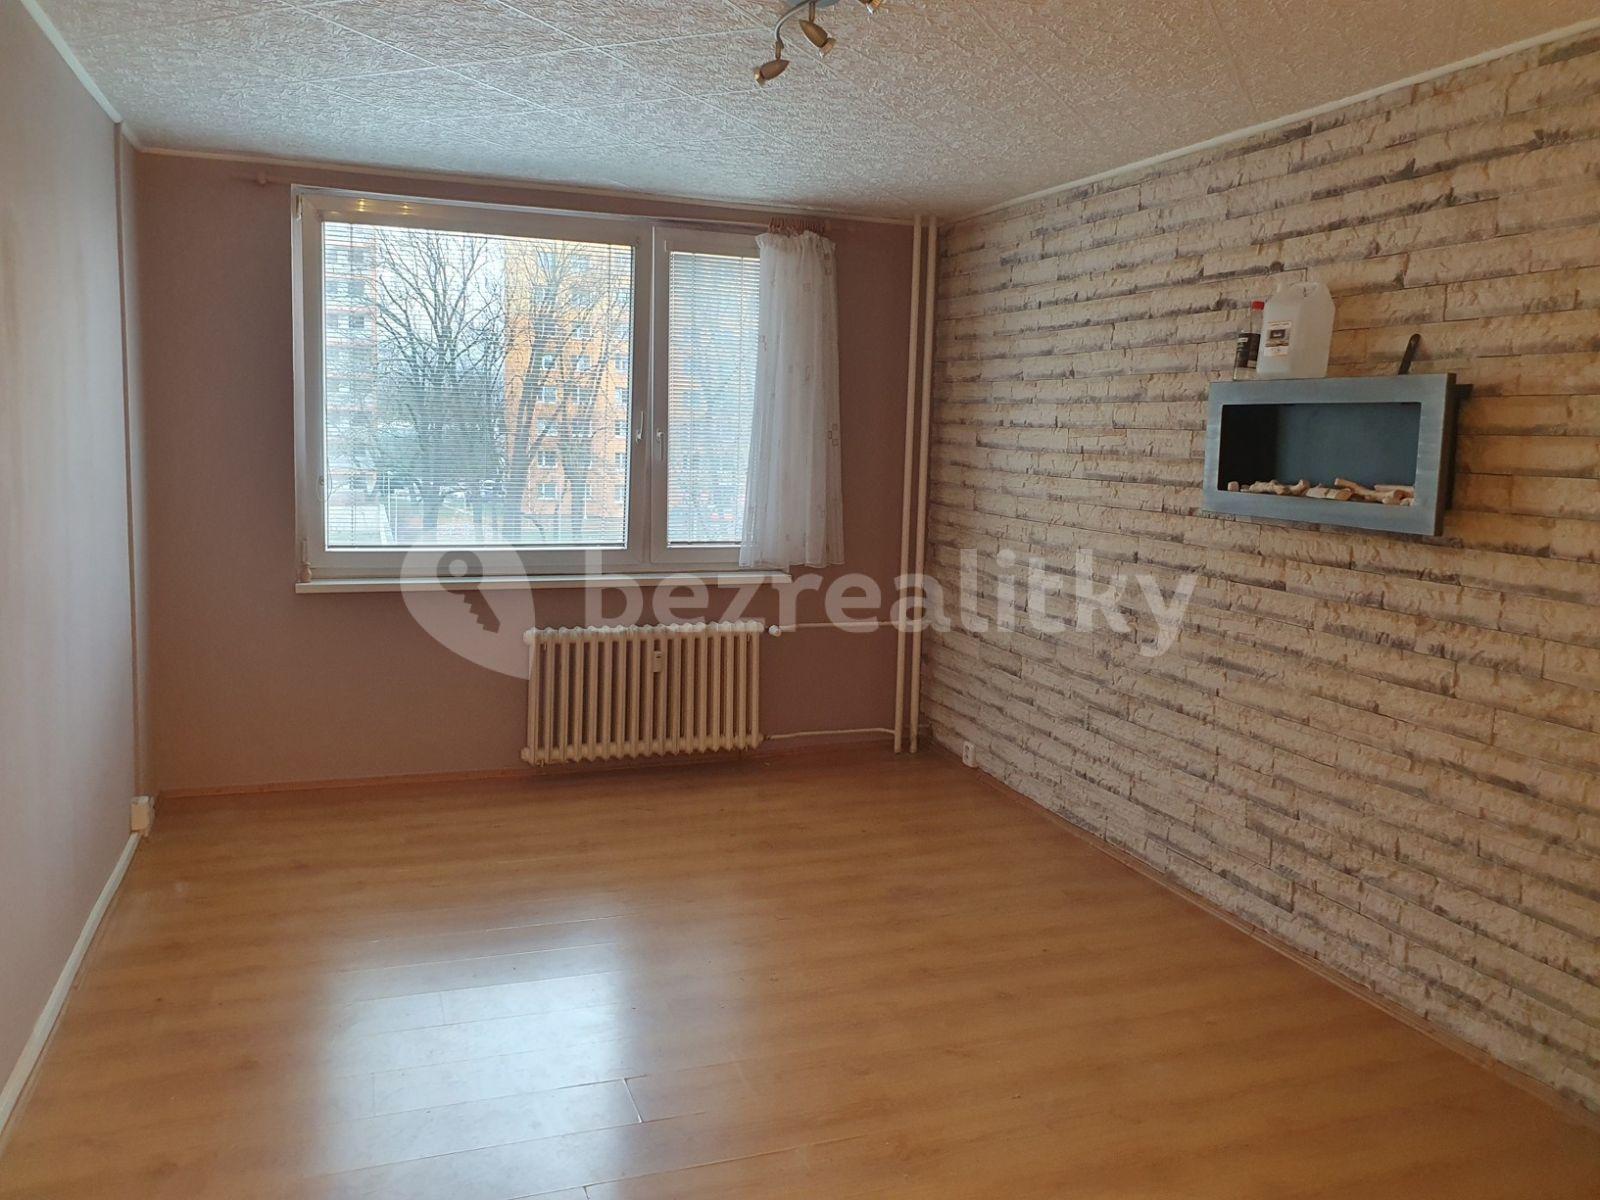 2 bedroom with open-plan kitchen flat to rent, 64 m², Tovární, Beroun, Středočeský Region